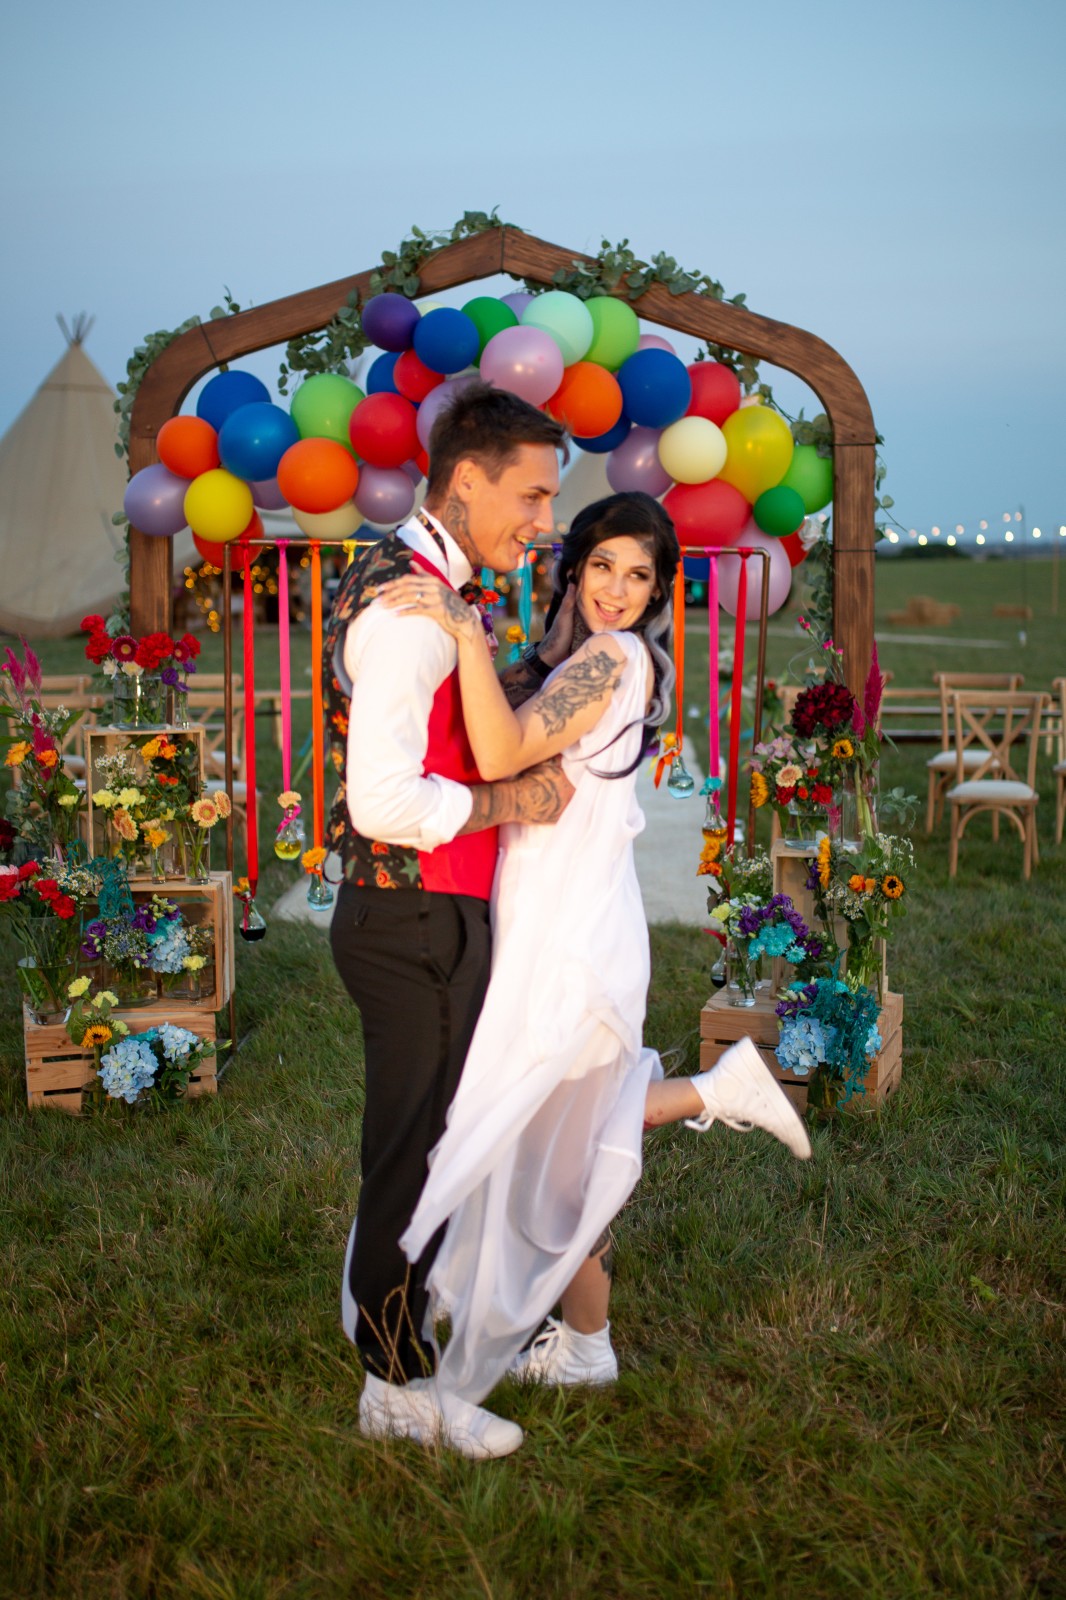 rainbow festival wedding - colourful wedding - quirky wedding ideas - colourful wedding ceremony - rainbow wedding arch